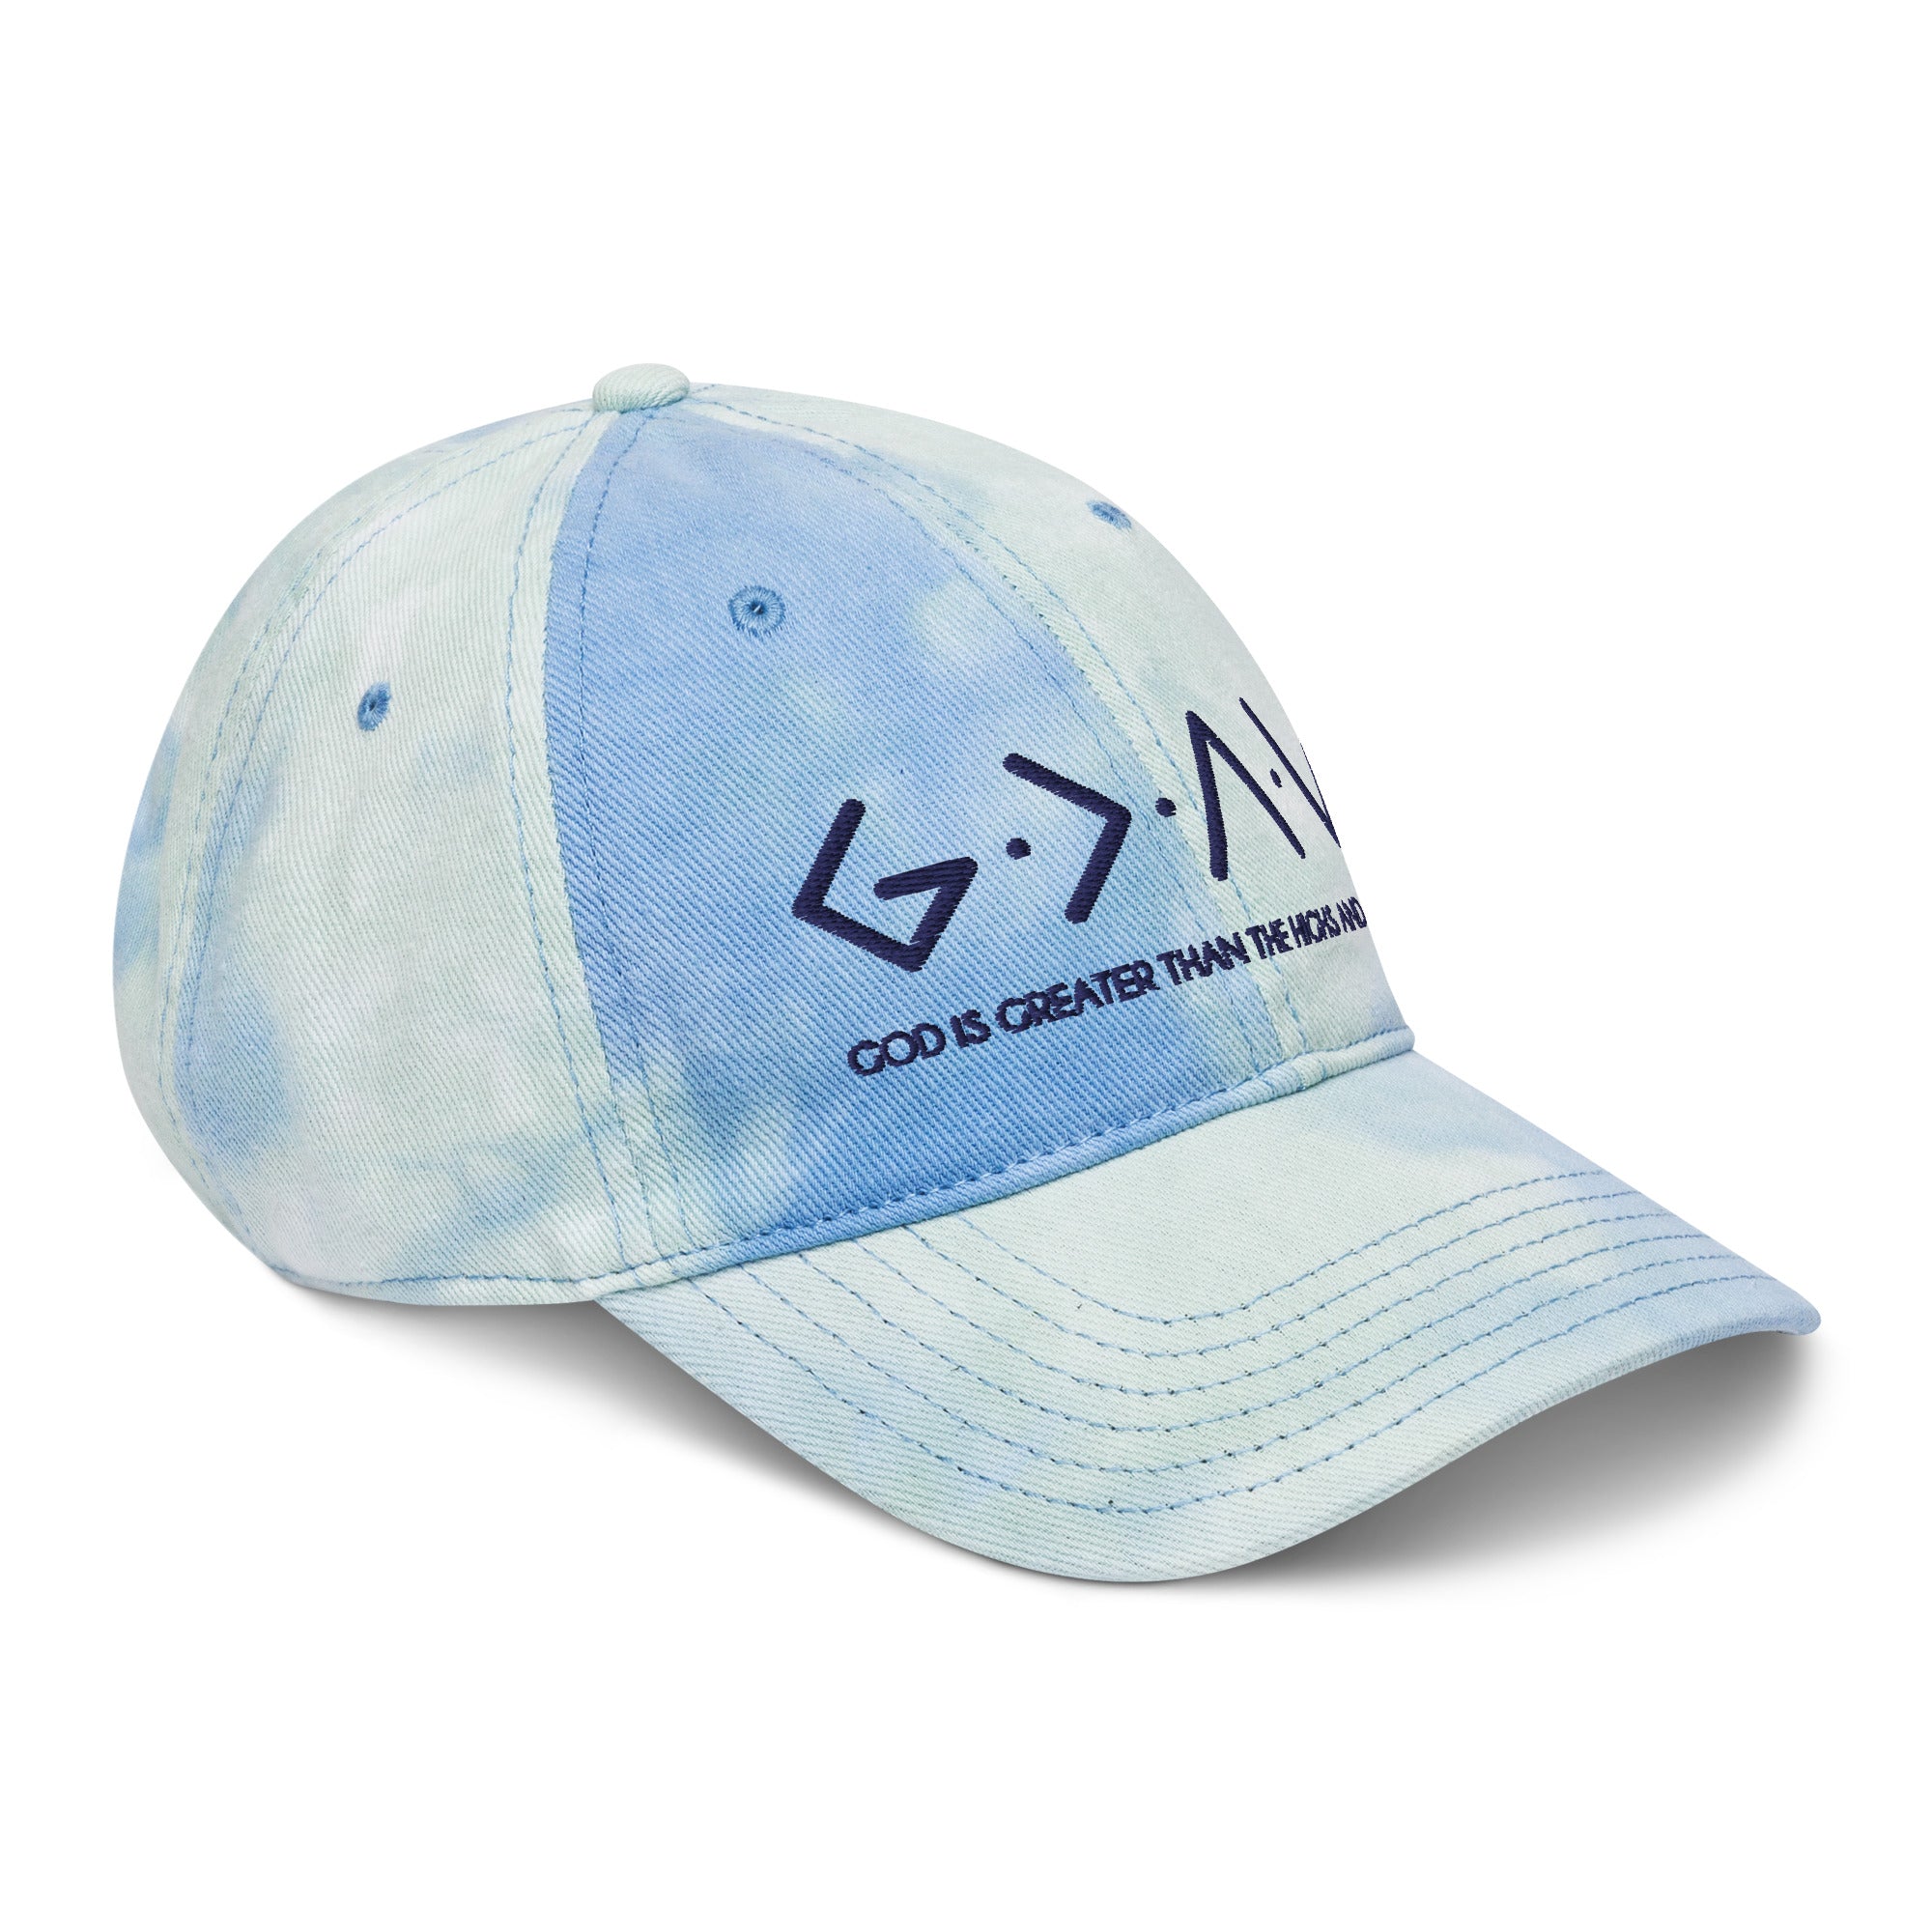 God is Greater |  Logo On Back |Tie dye hat